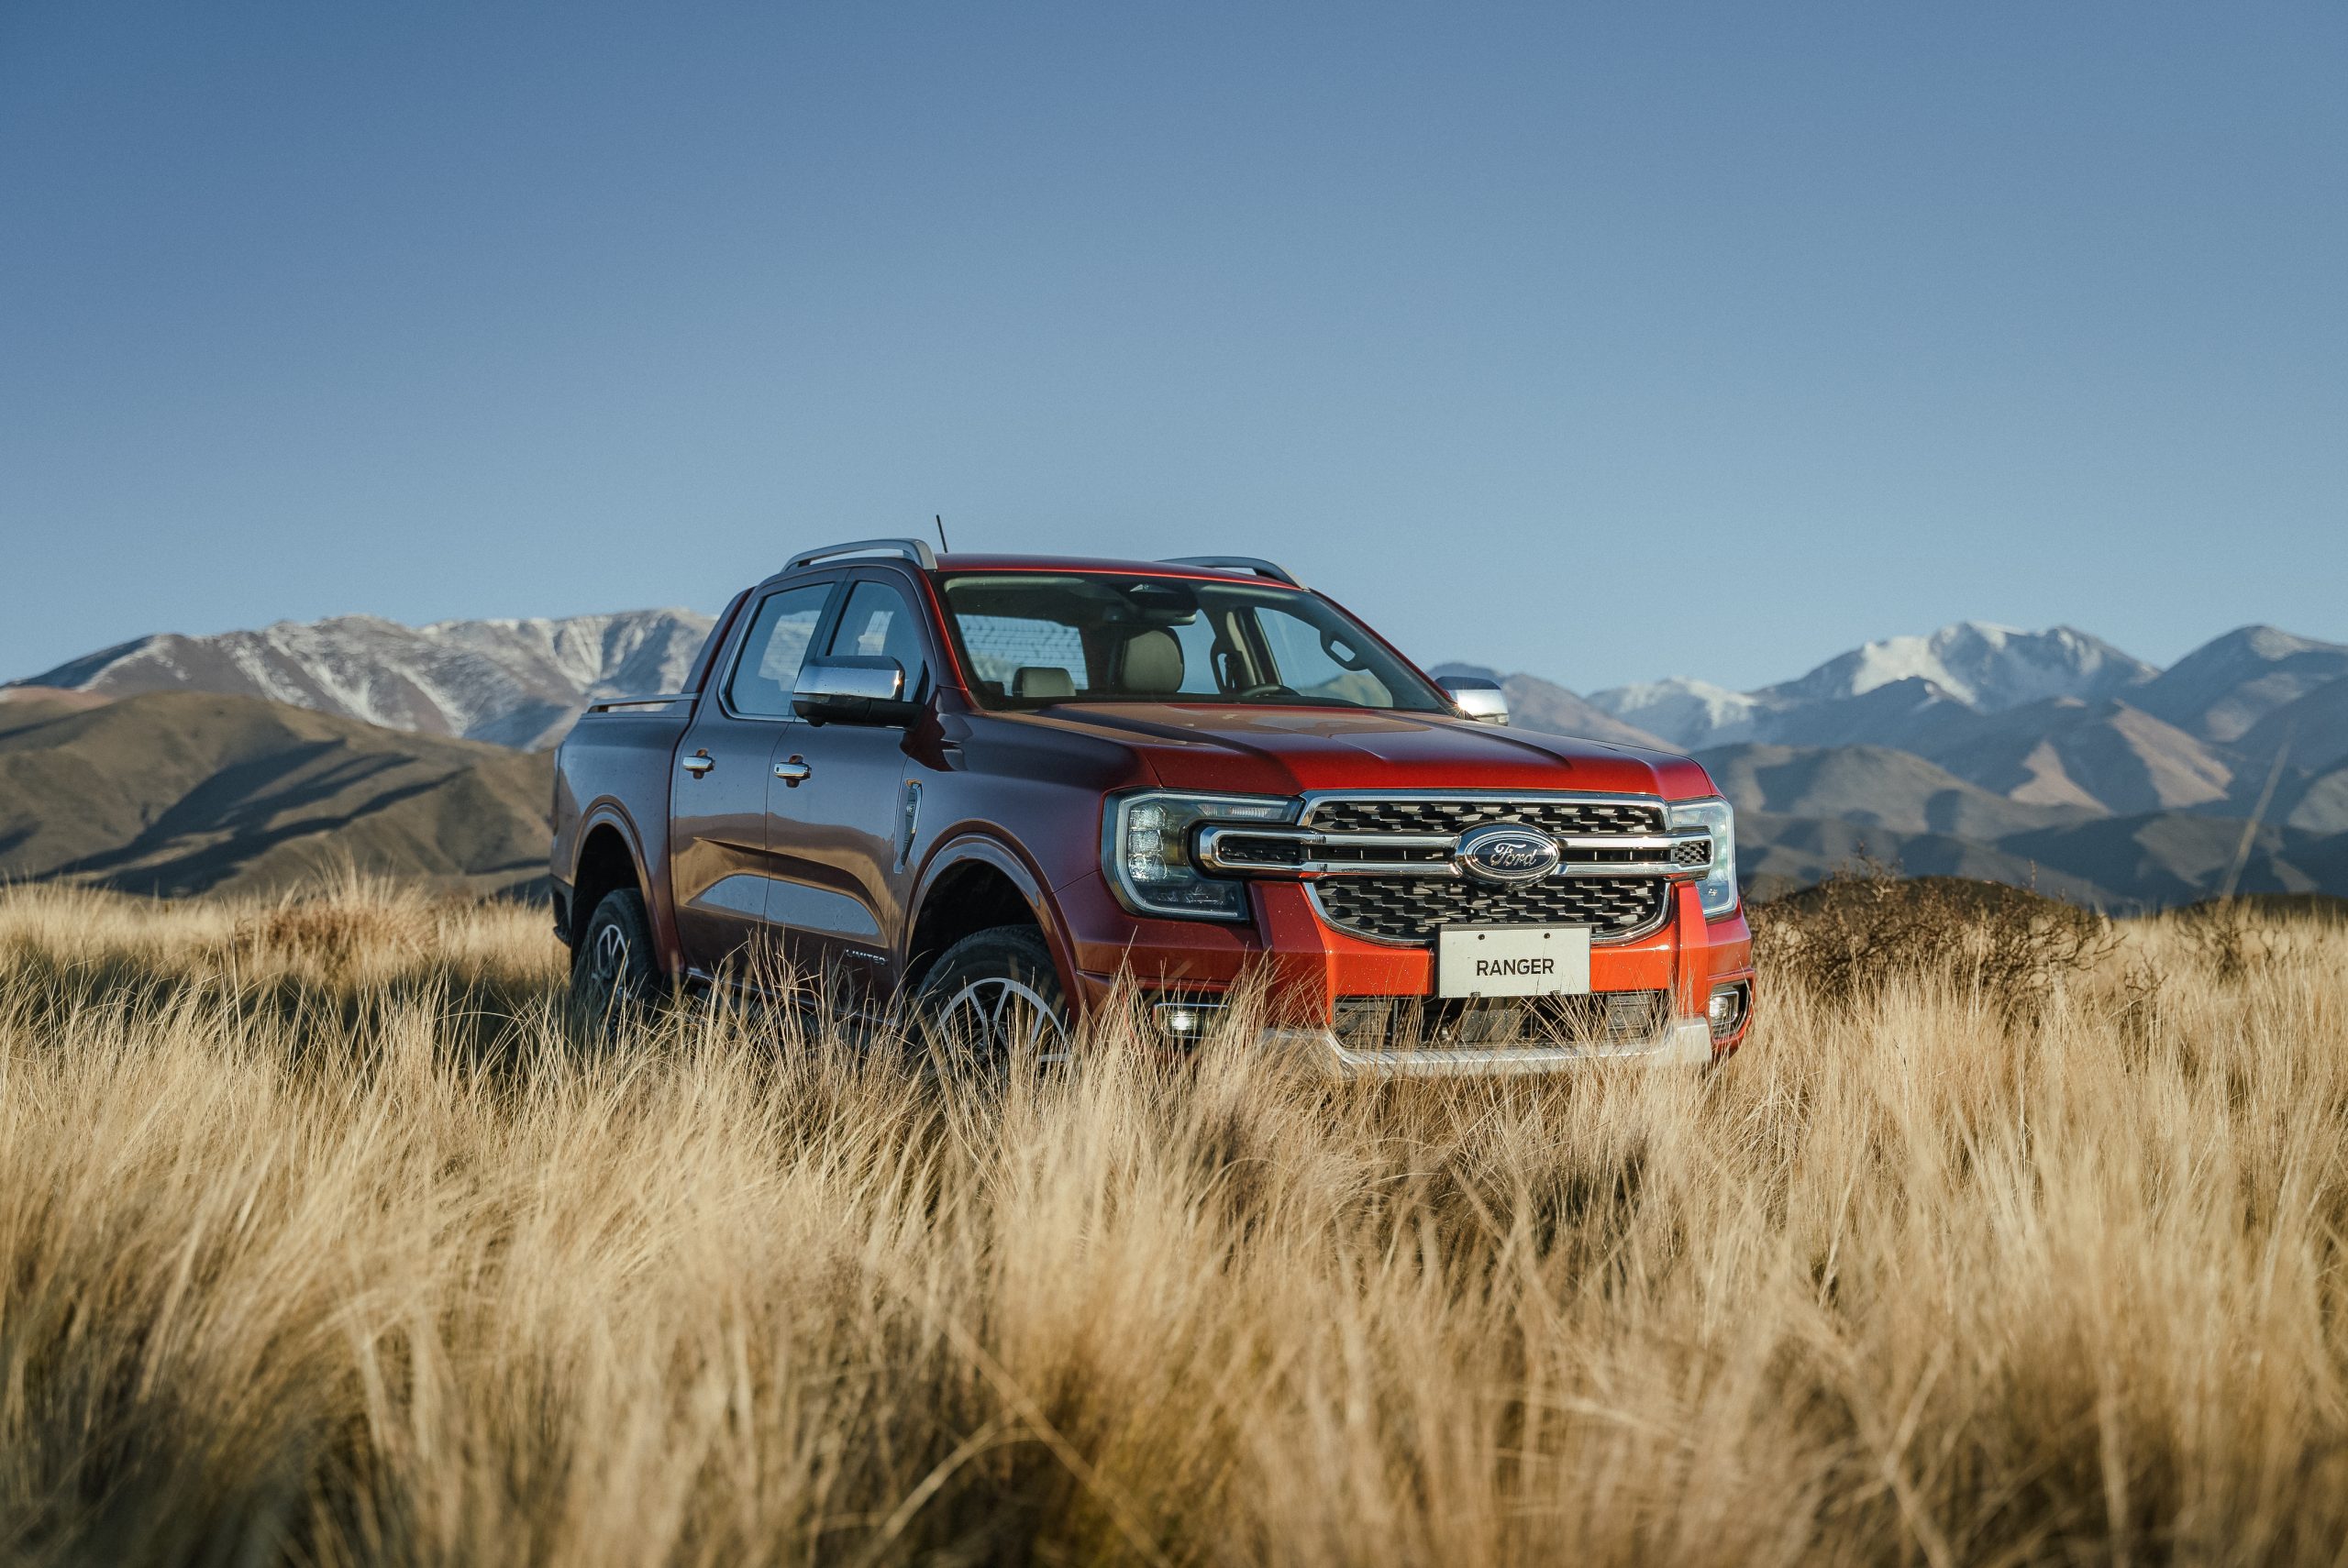 La nueva generación de Ranger redefine el segmento de Pick-ups con tecnología, potencia y robustez